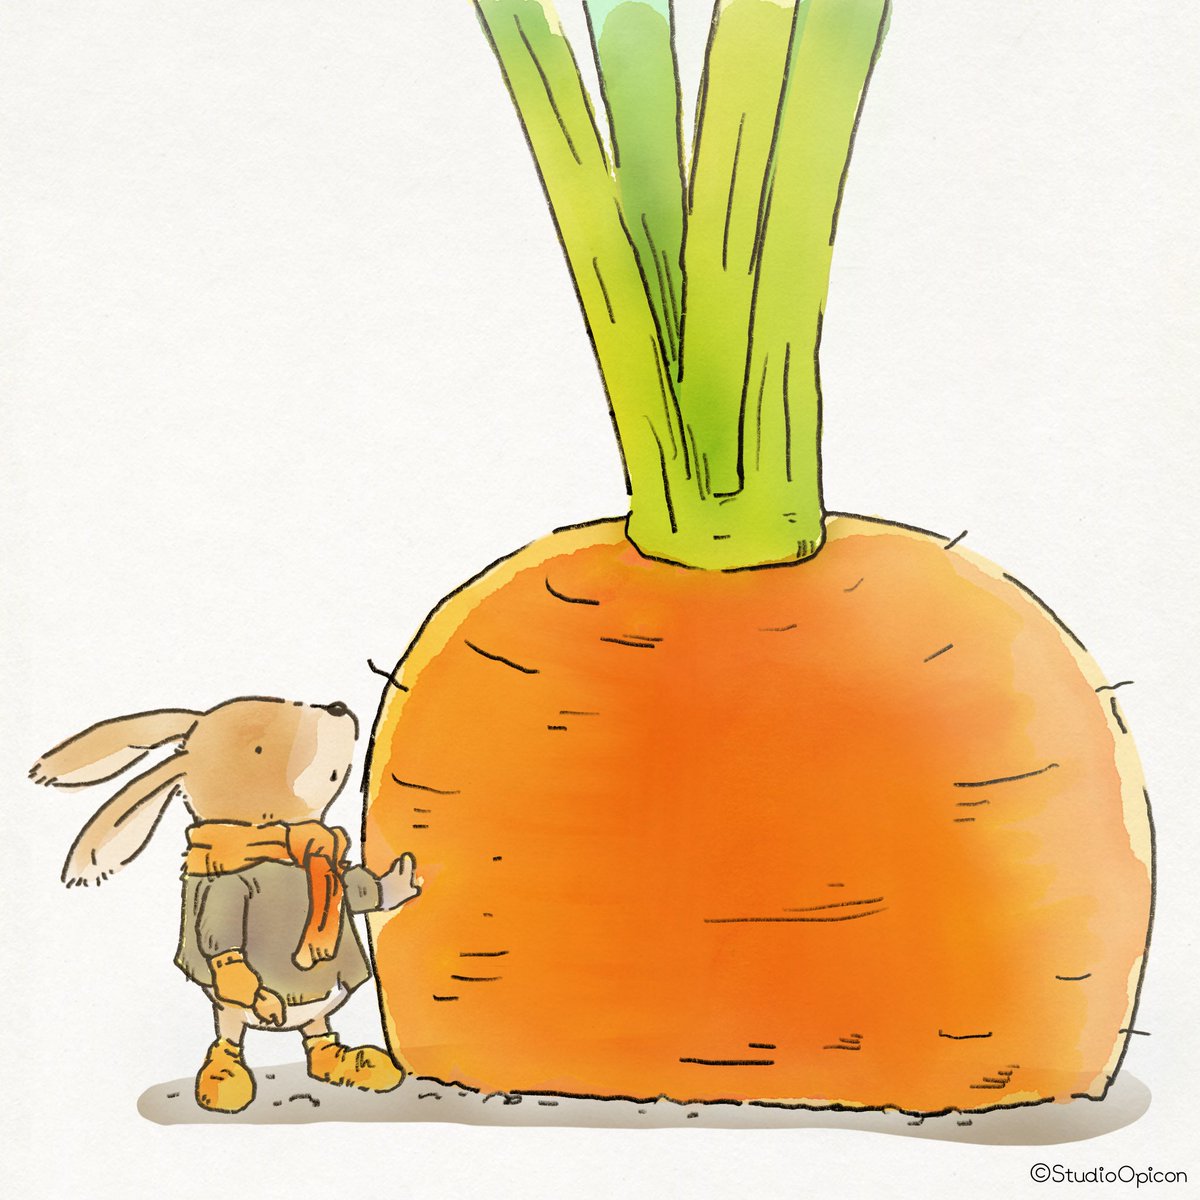 Studioopicon いや そだちすぎー 8月31日は野菜の日 だ そうです イラスト キャラクター うさぎ ウサギ にんじん ニンジン 野菜 動物イラスト 和み系キャラ Illustration Character Rabit Carrot Vegetable Animalillustration